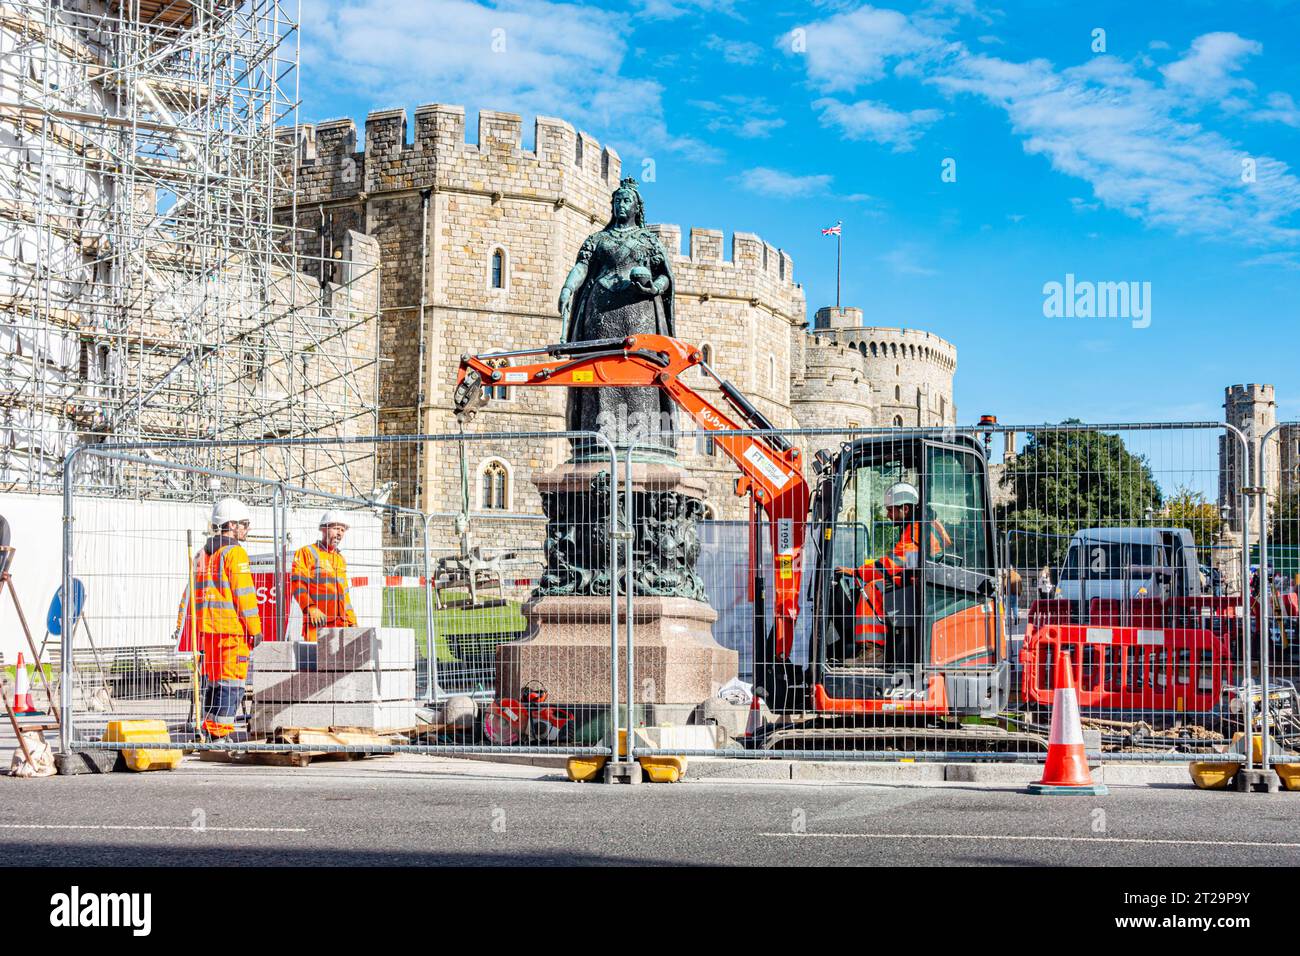 Lavori stradali all'esterno del Castello di Windsor intorno alla statua di bronzo della Regina Vittoria. L'area è recintata mentre gli operai scavano la strada. Foto Stock